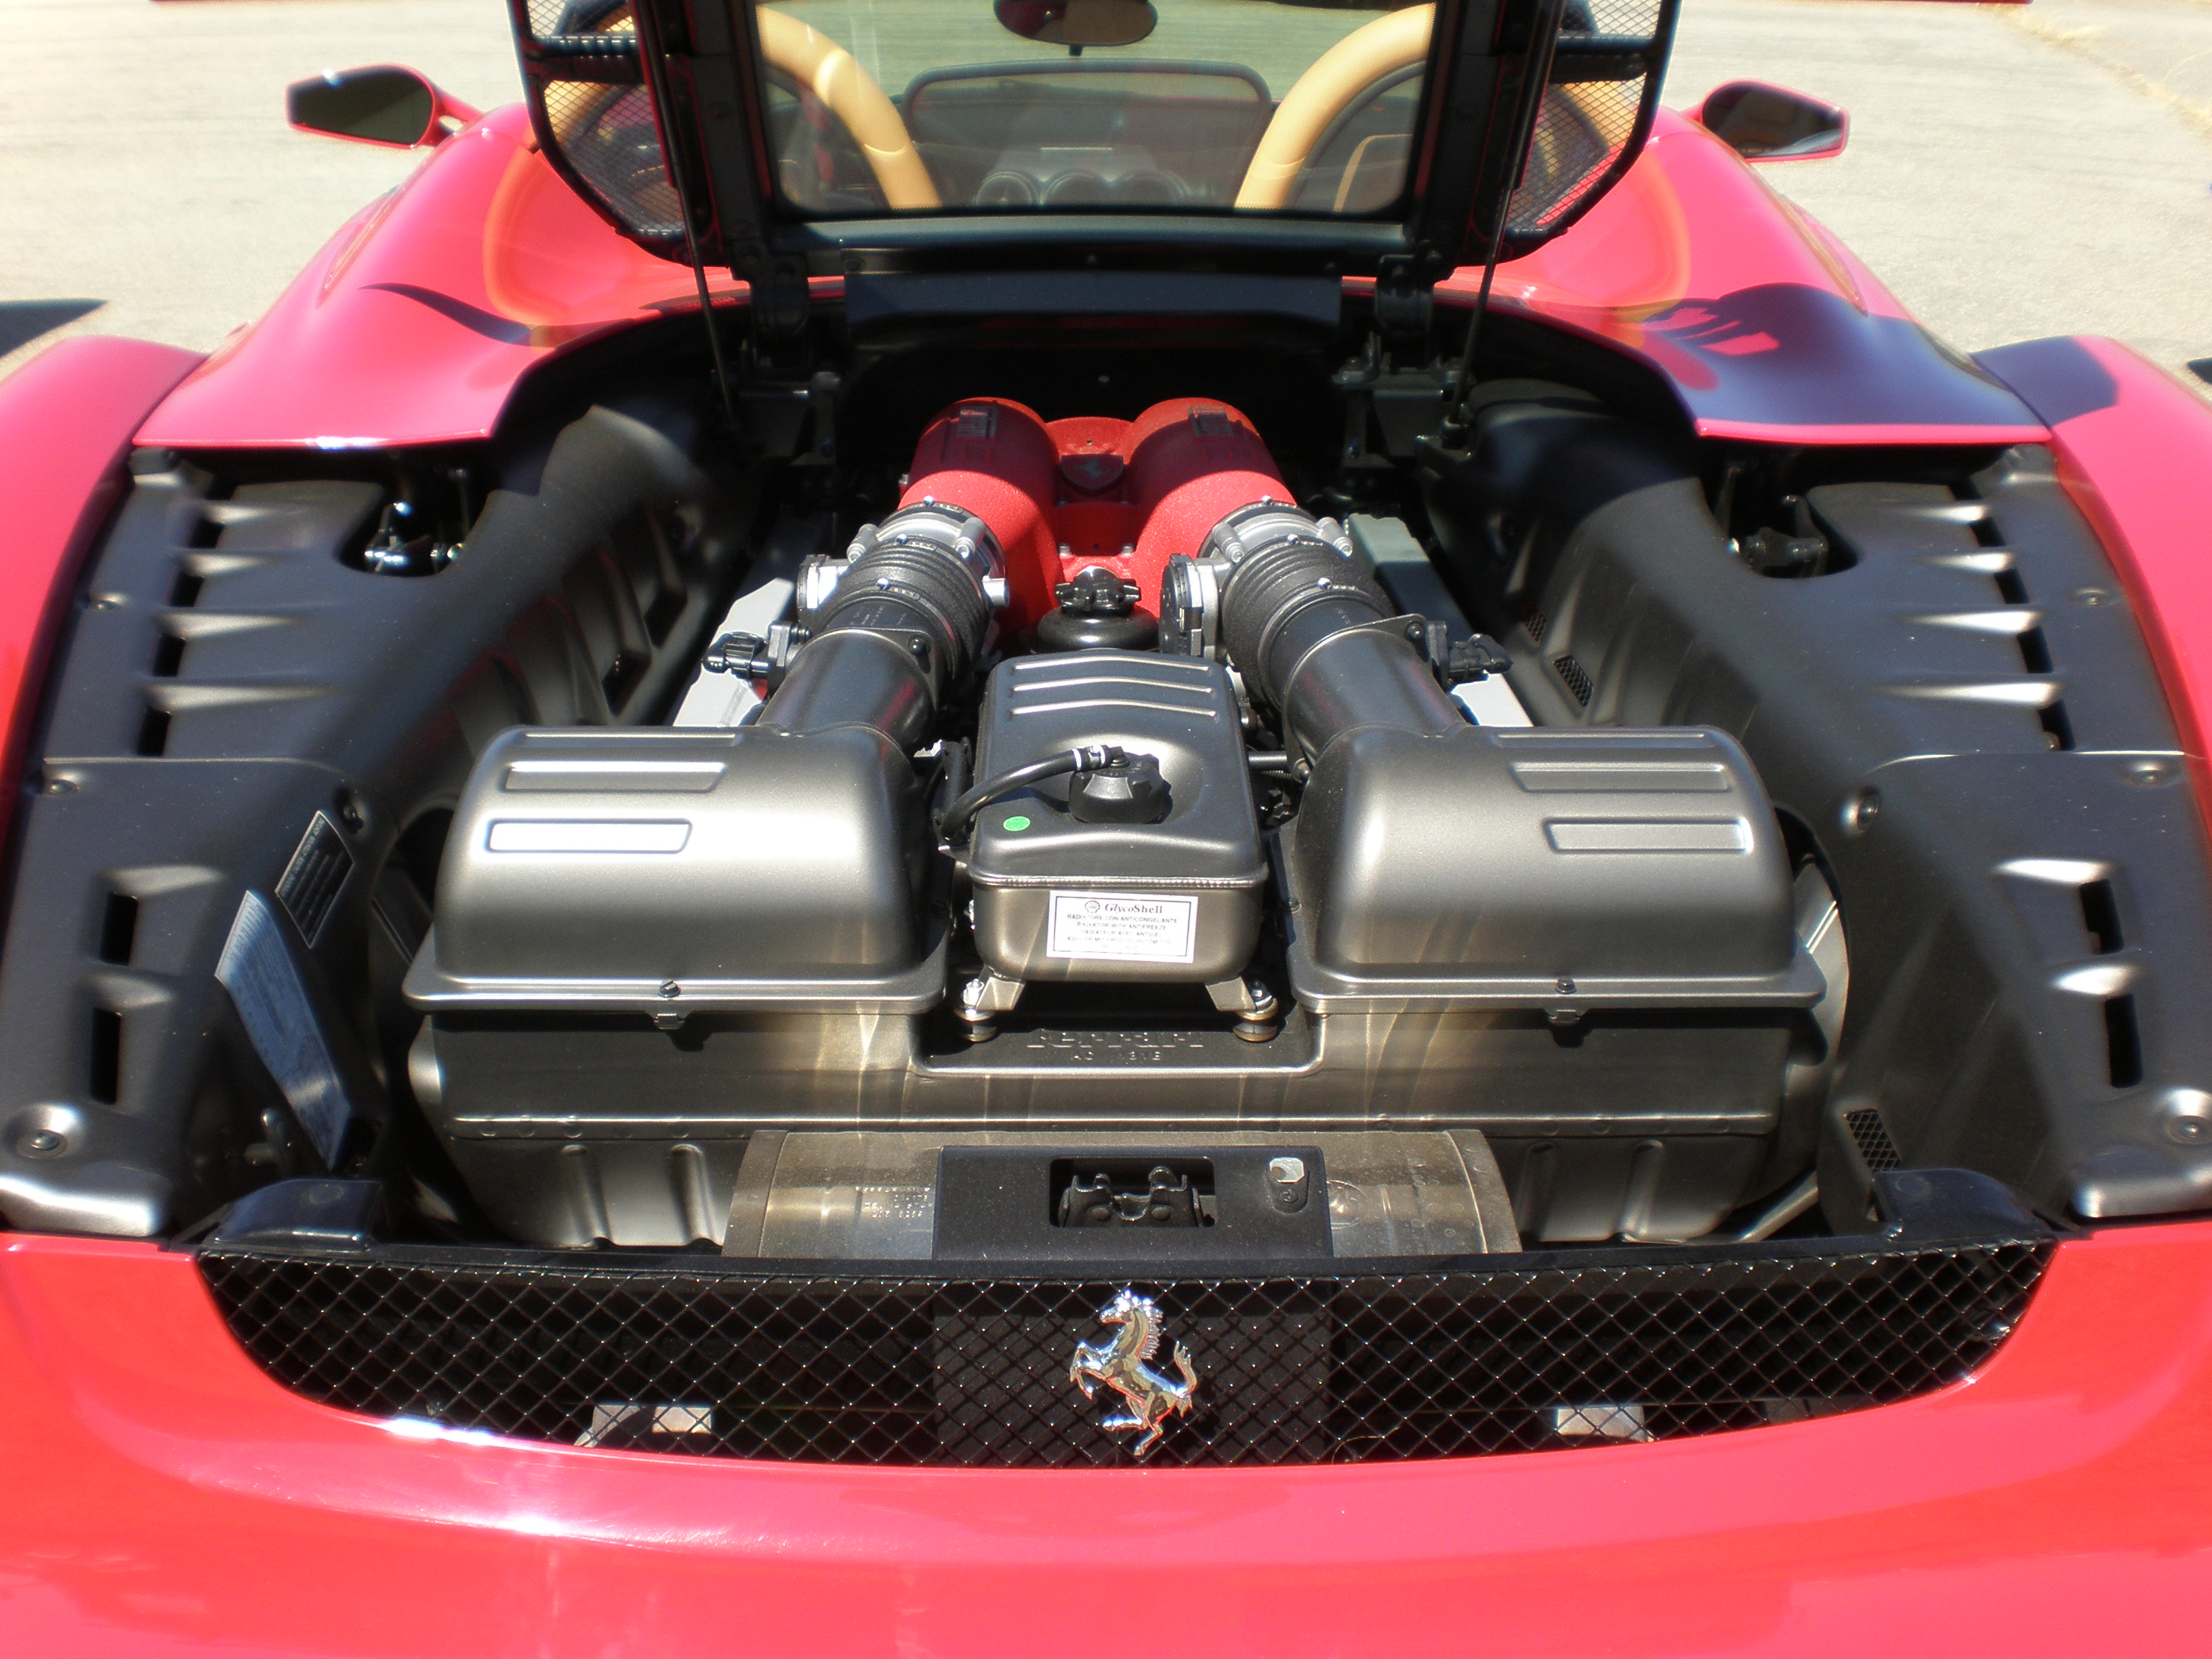 Red Ferrari F430 Spider engine hood open